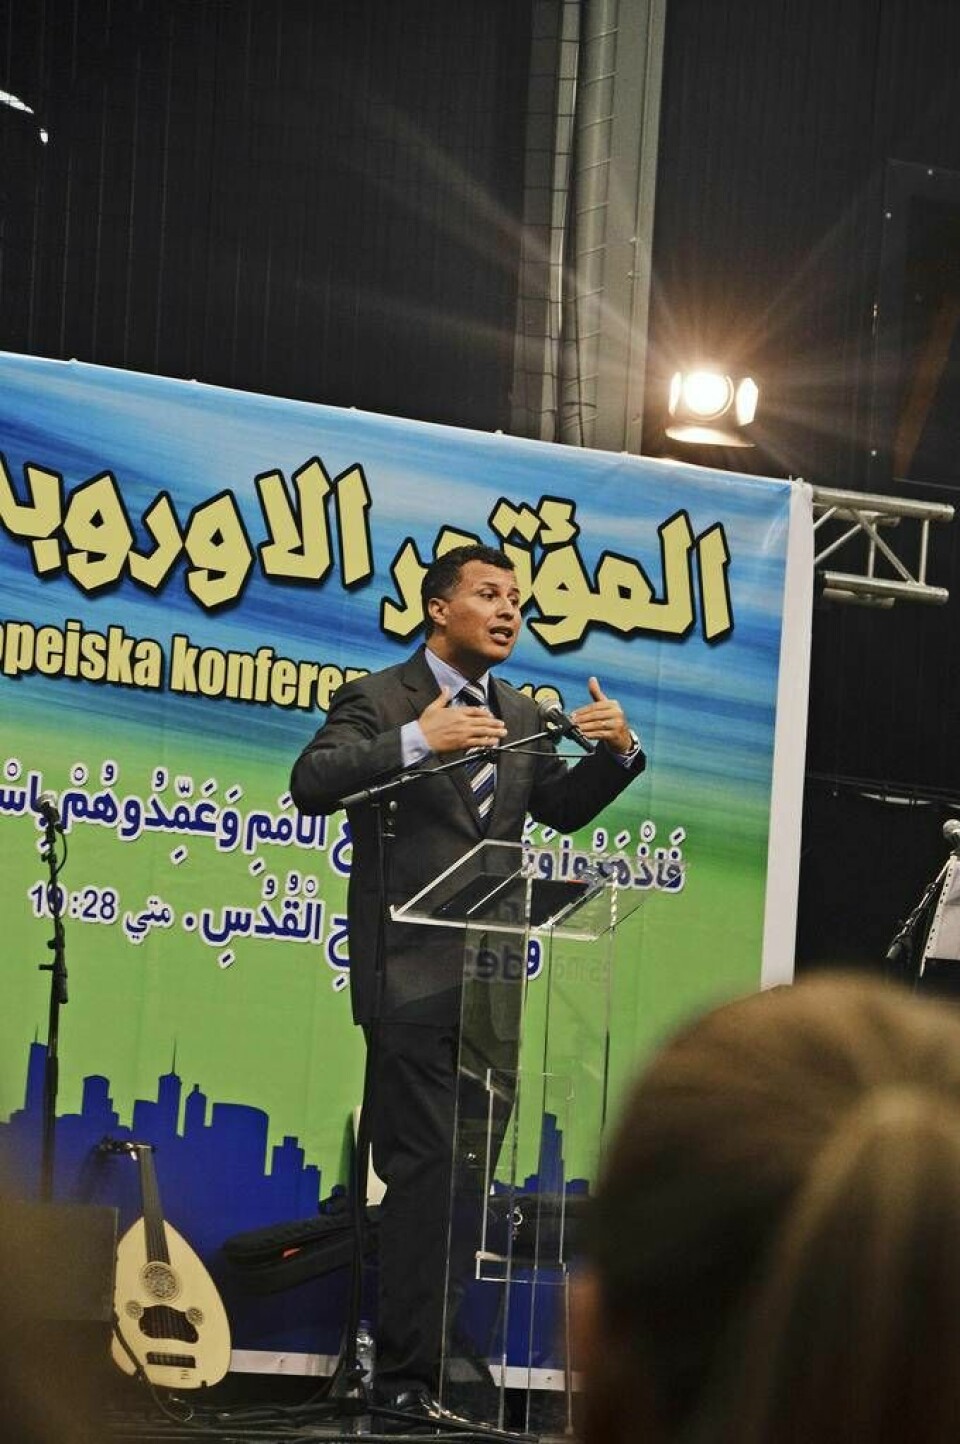 'Det finns människor som vill döda mig' berättade broder Rashid i sin predikan.